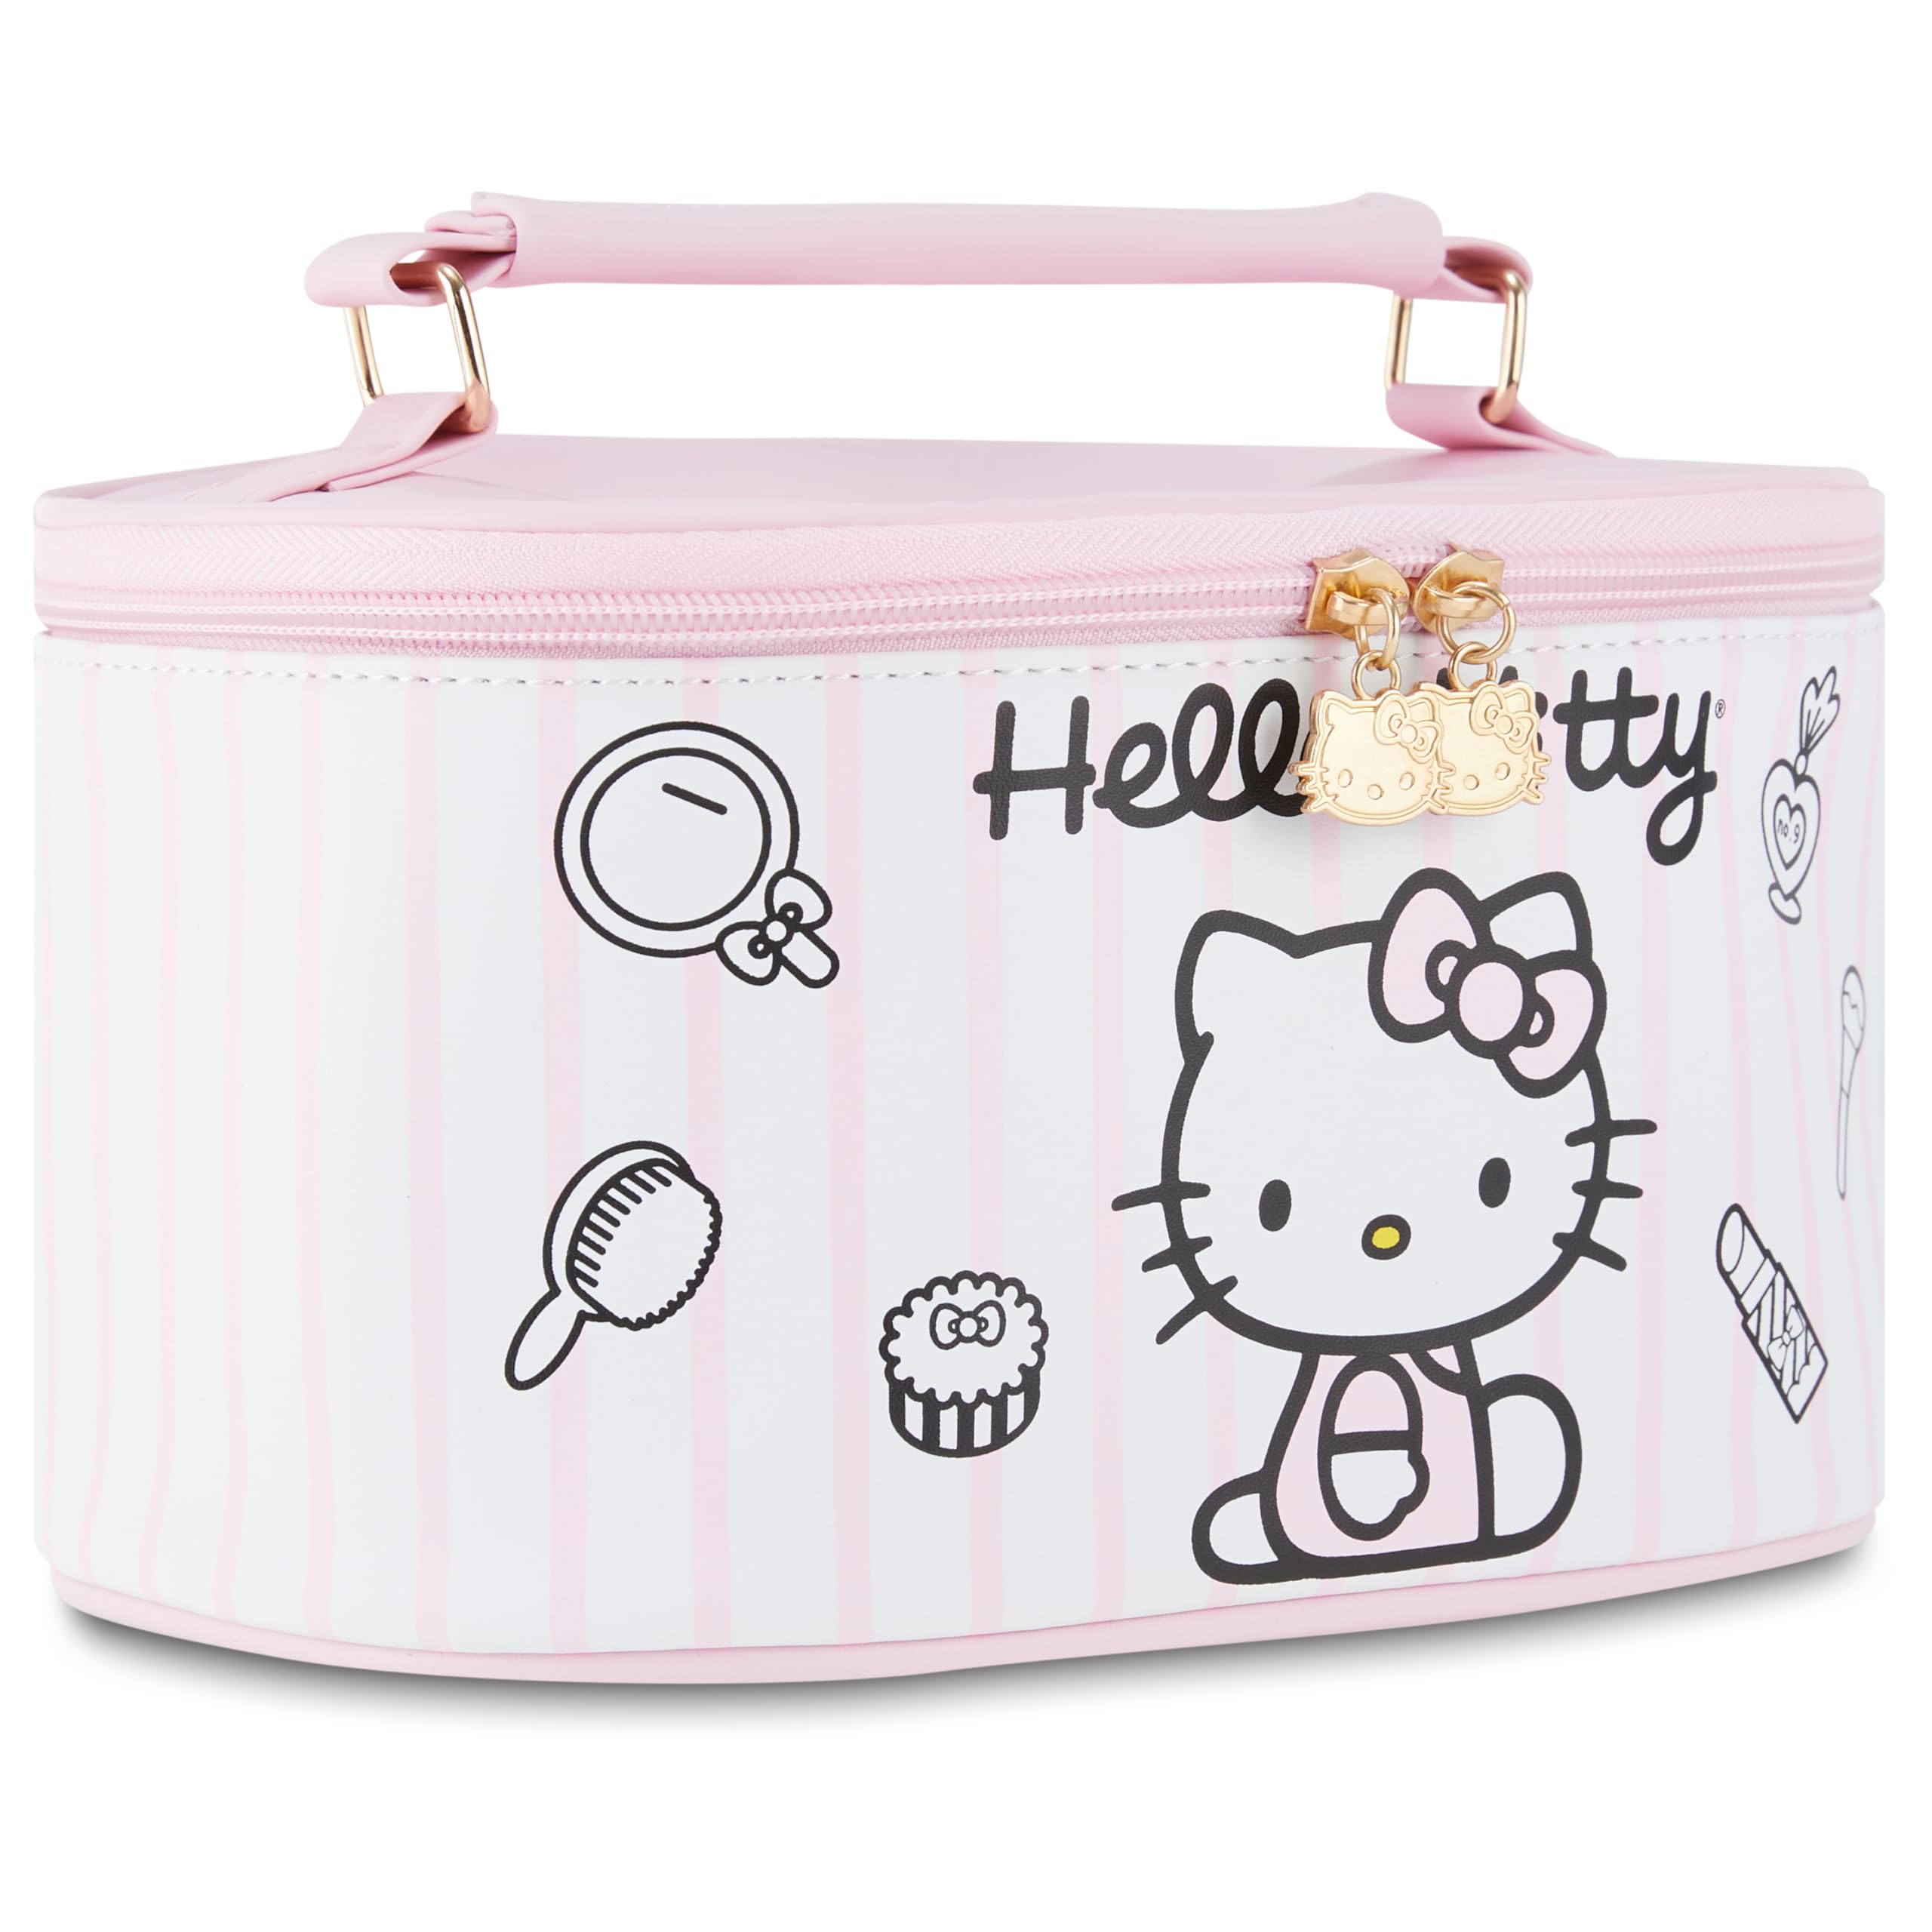 SANRIO Hello Kitty Reise-Kosmetikkoffer, für Mädchen, Jungen, Teenager, Erwachsene, offizielles Lizenzprodukt, oval, Hello Kitty, Helles Pink